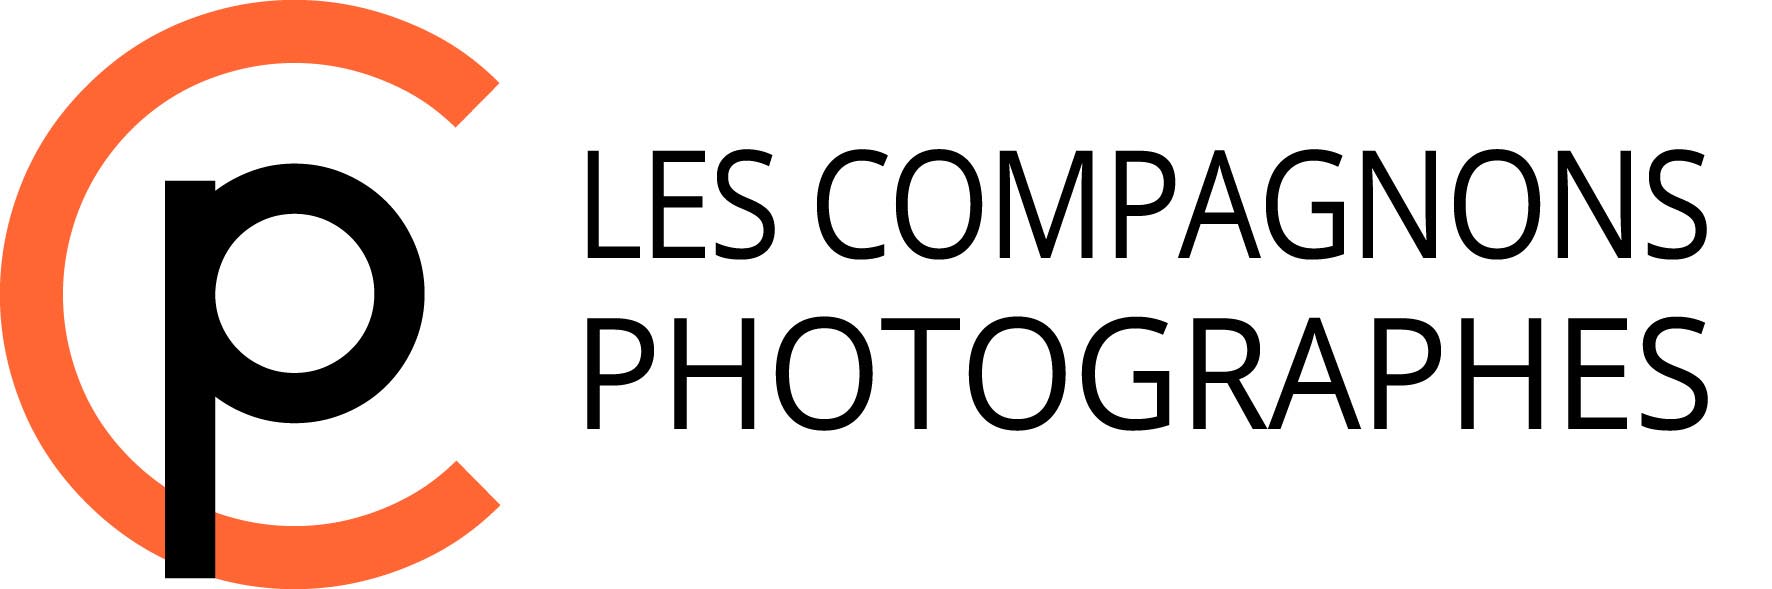 LES COMPAGNONS PHOTOGRAPHES